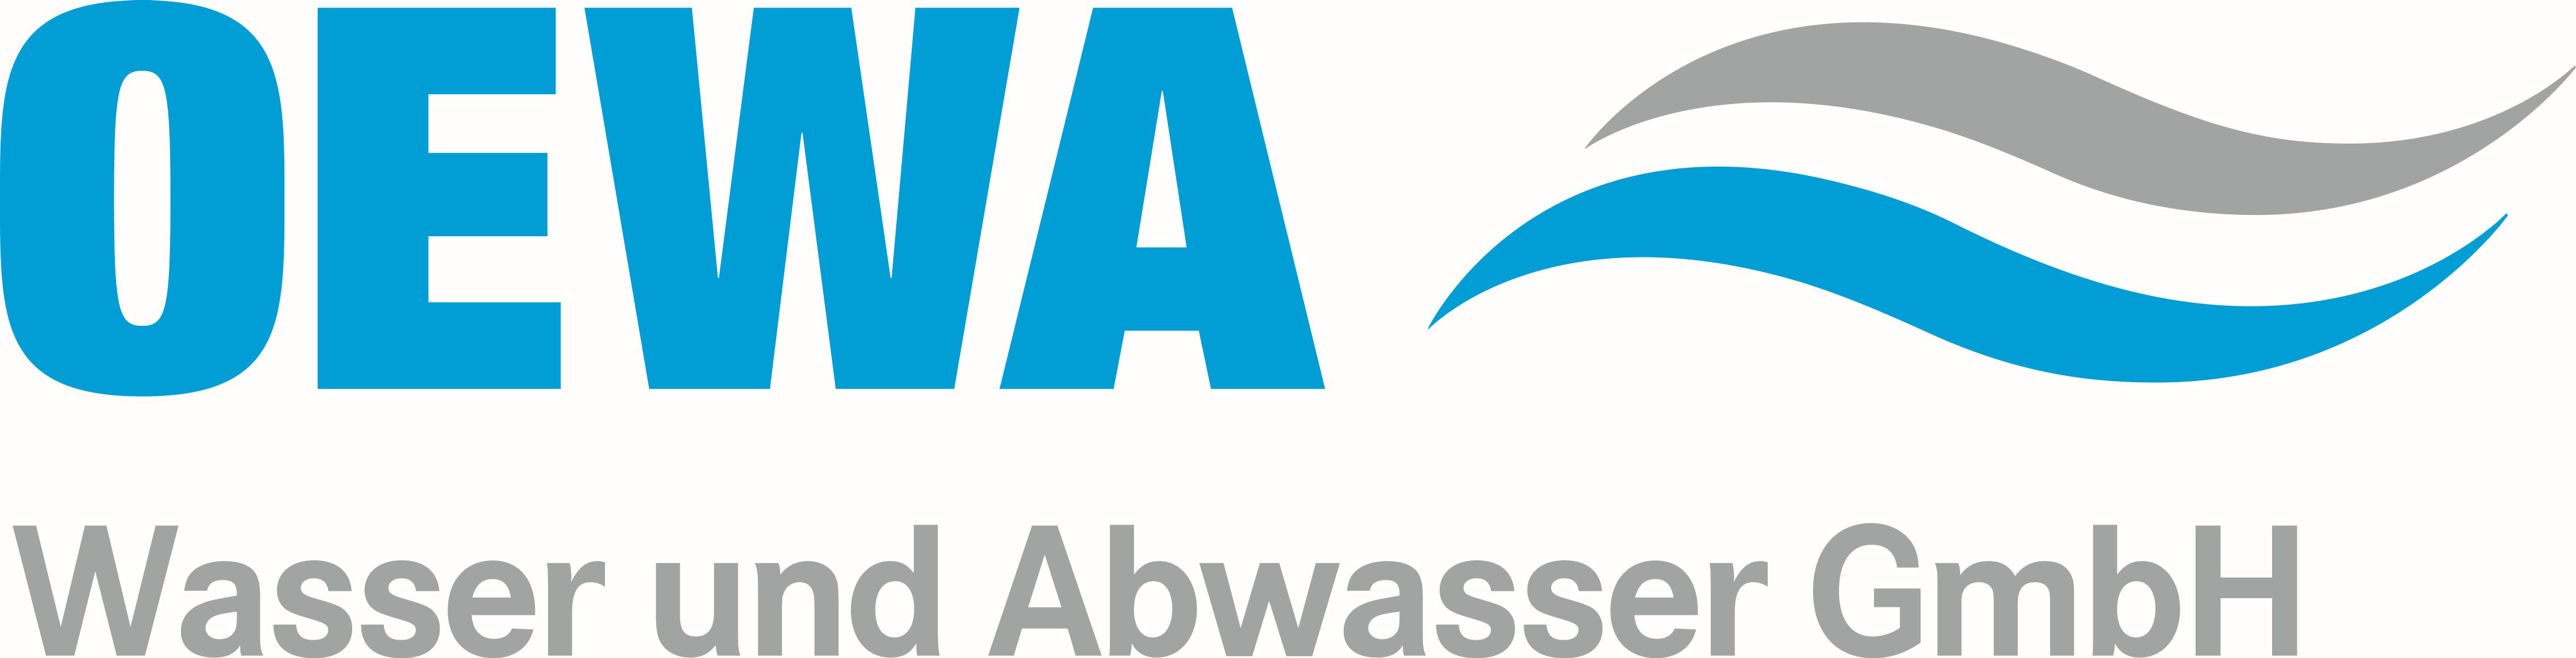 OEWA Wasser und Abwasser GmbH